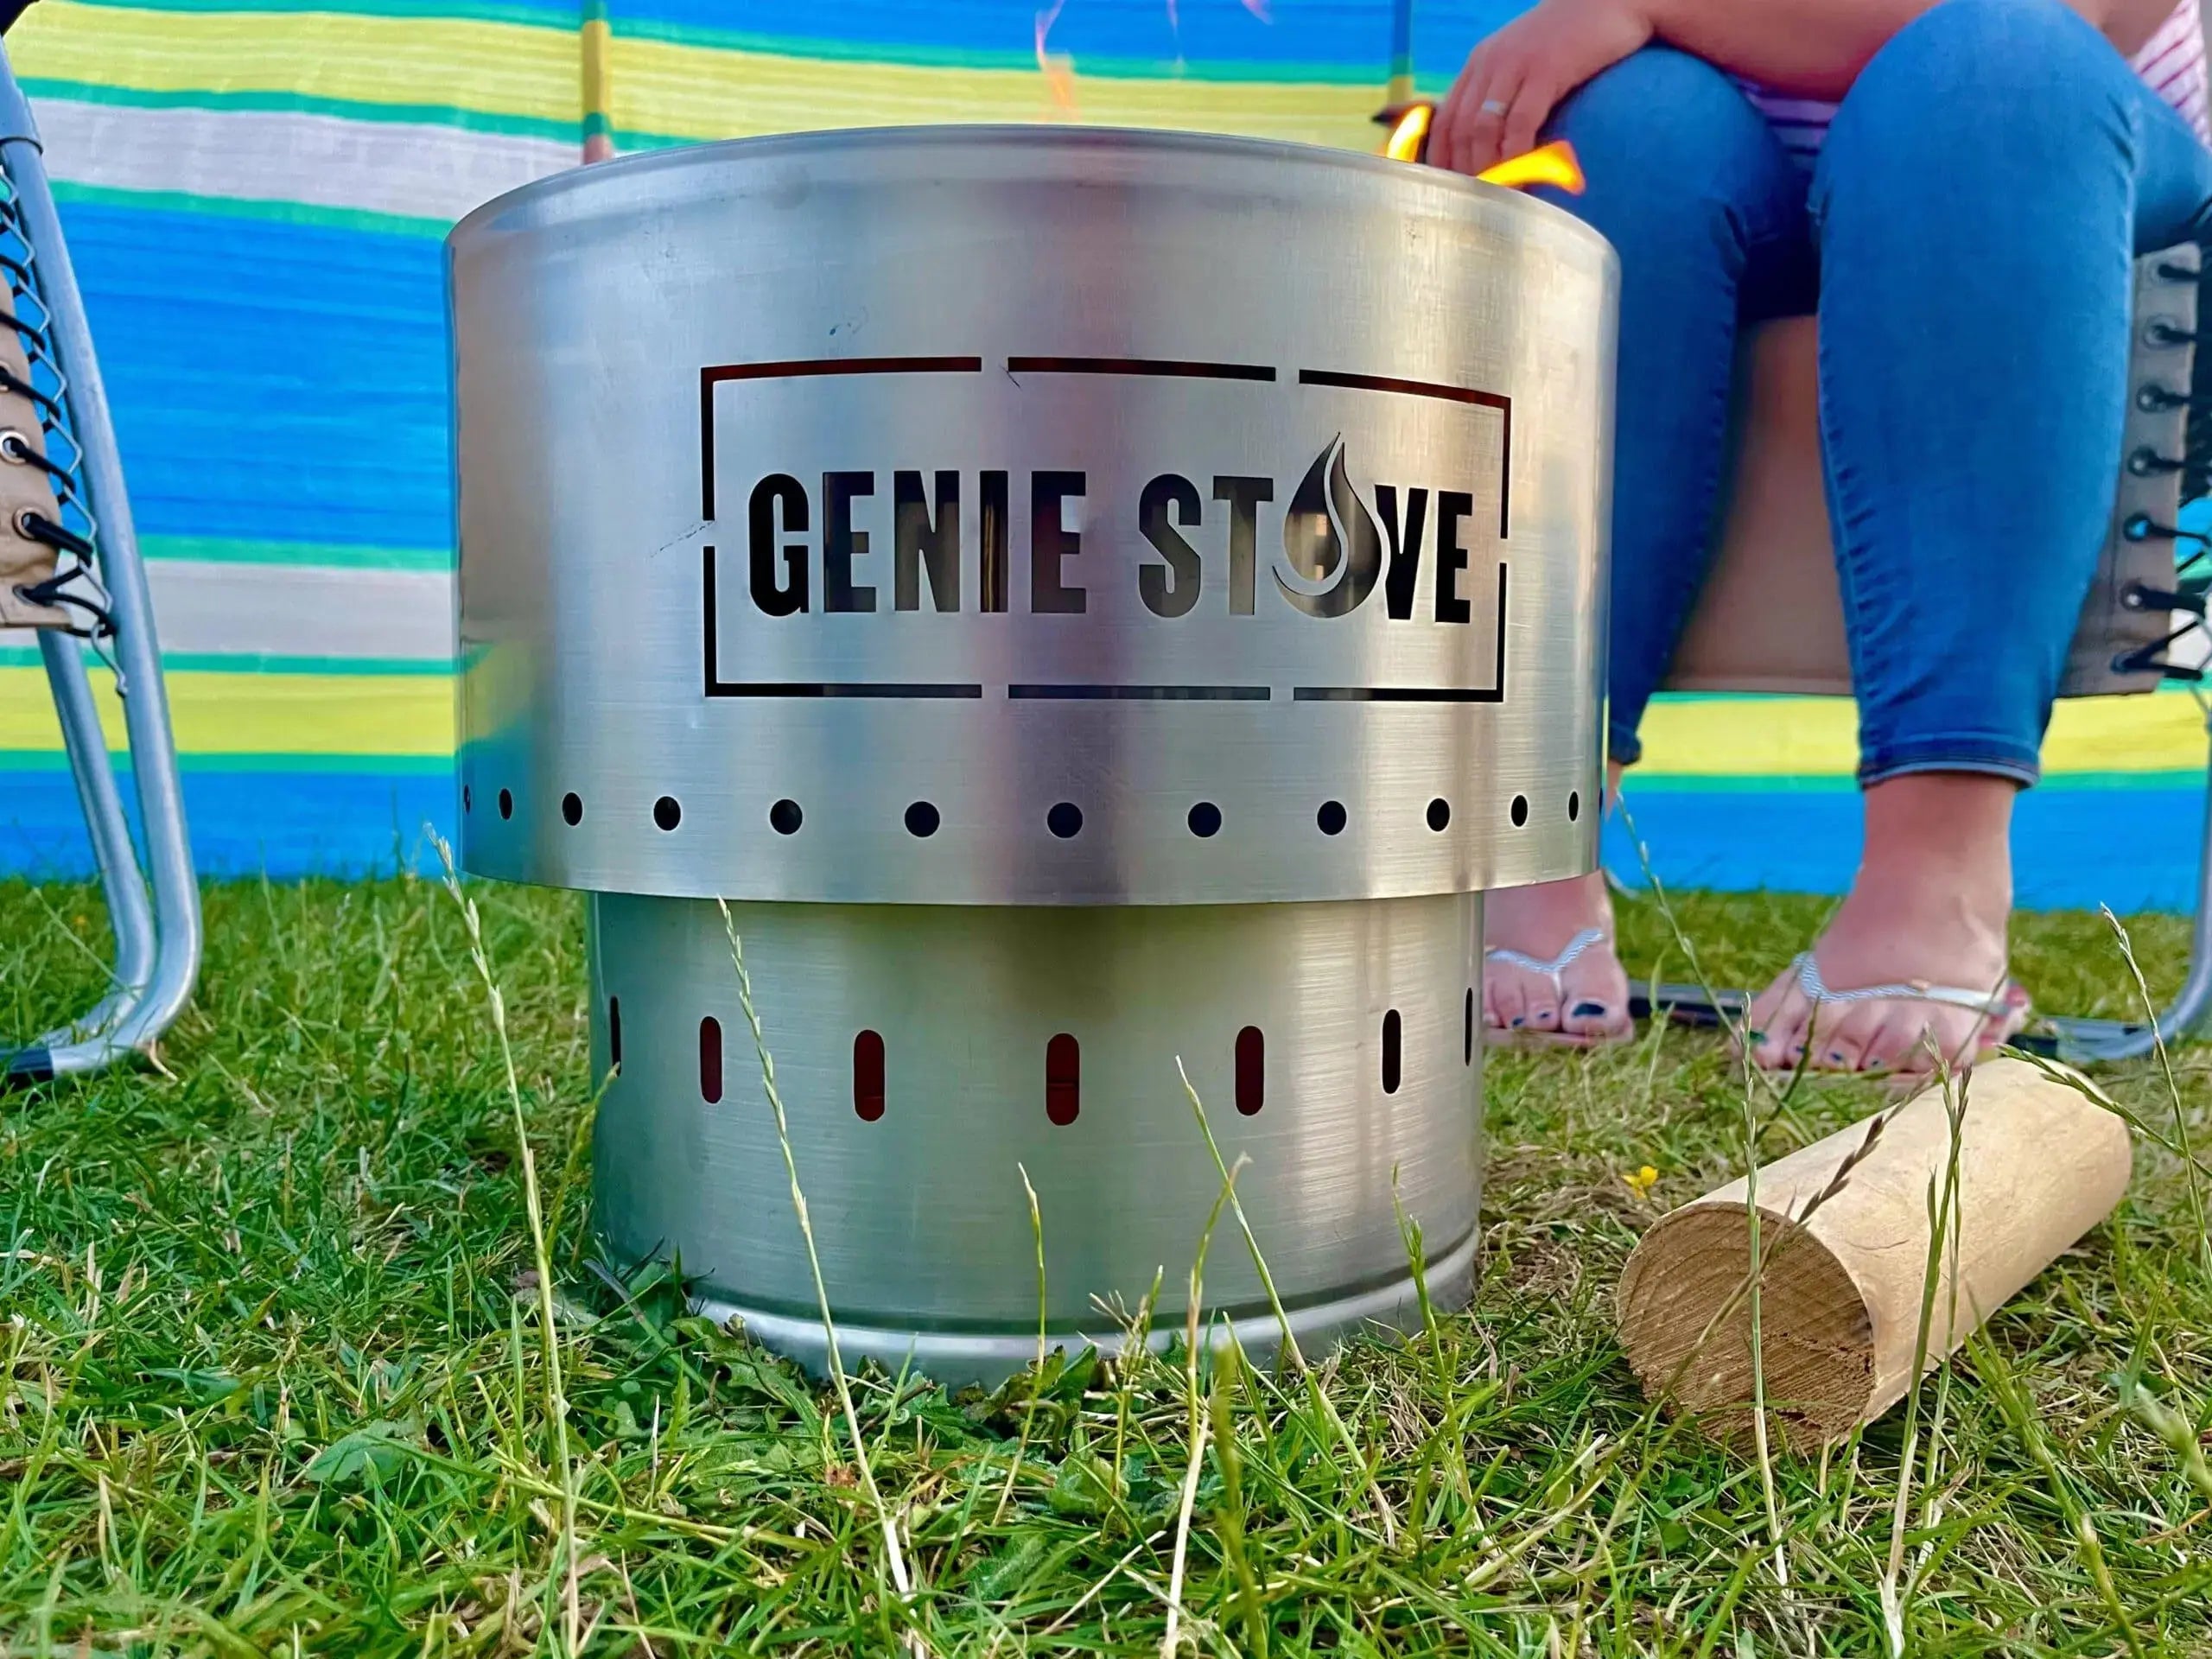 The Genie Stove Mini